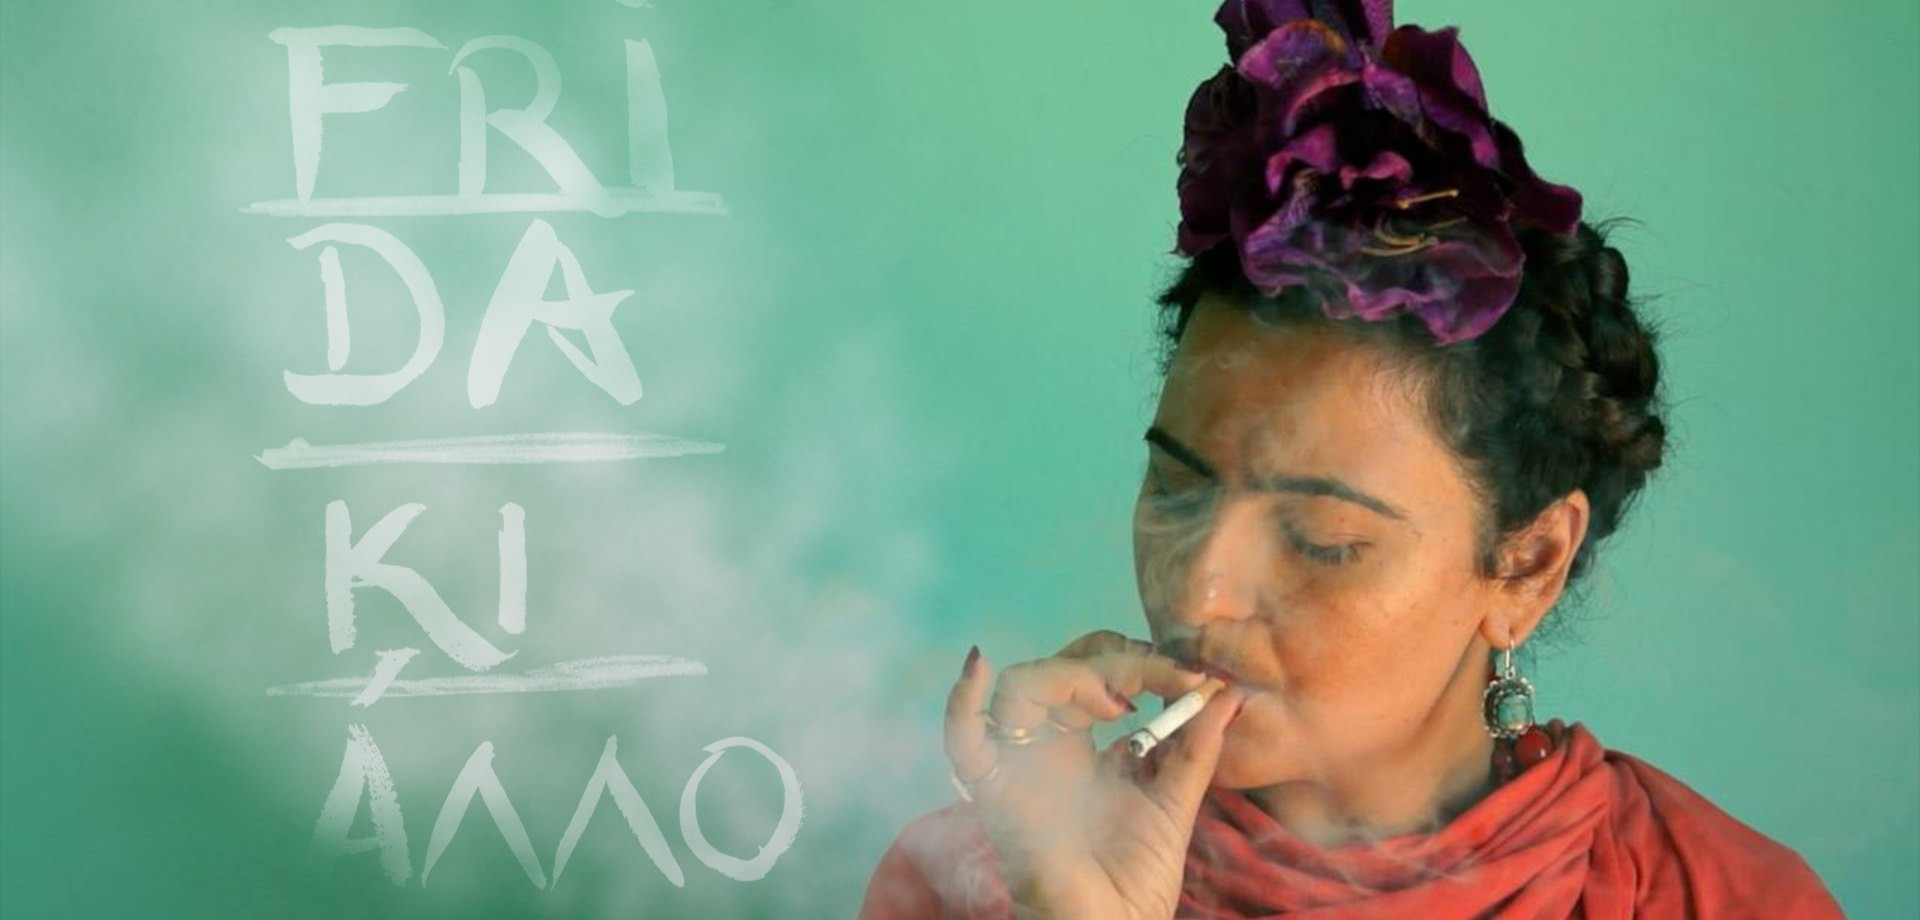 «Frida ΚΙ ΑΛΛΟ»: Βασισμένο στη ζωή και το έργο της Μεξικανής ζωγράφου